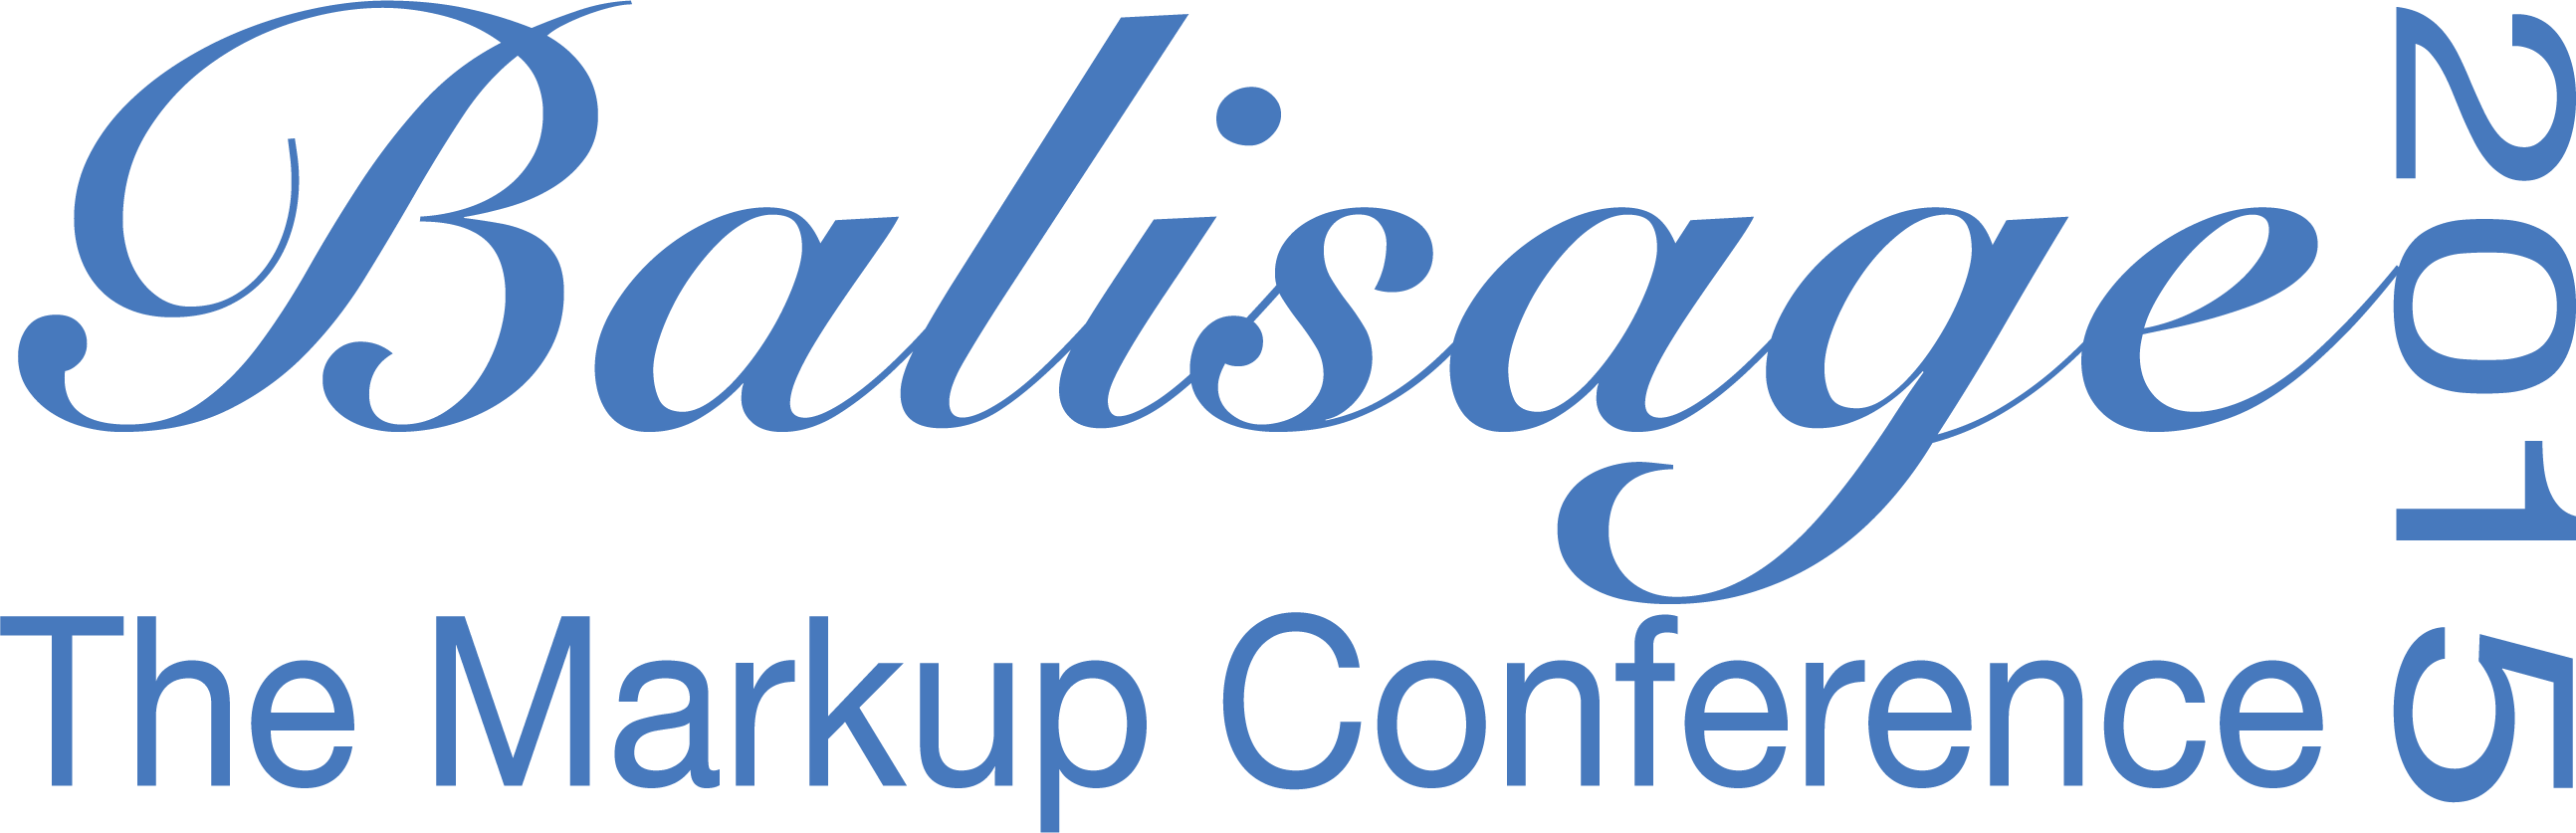 Balisage 2015 logo